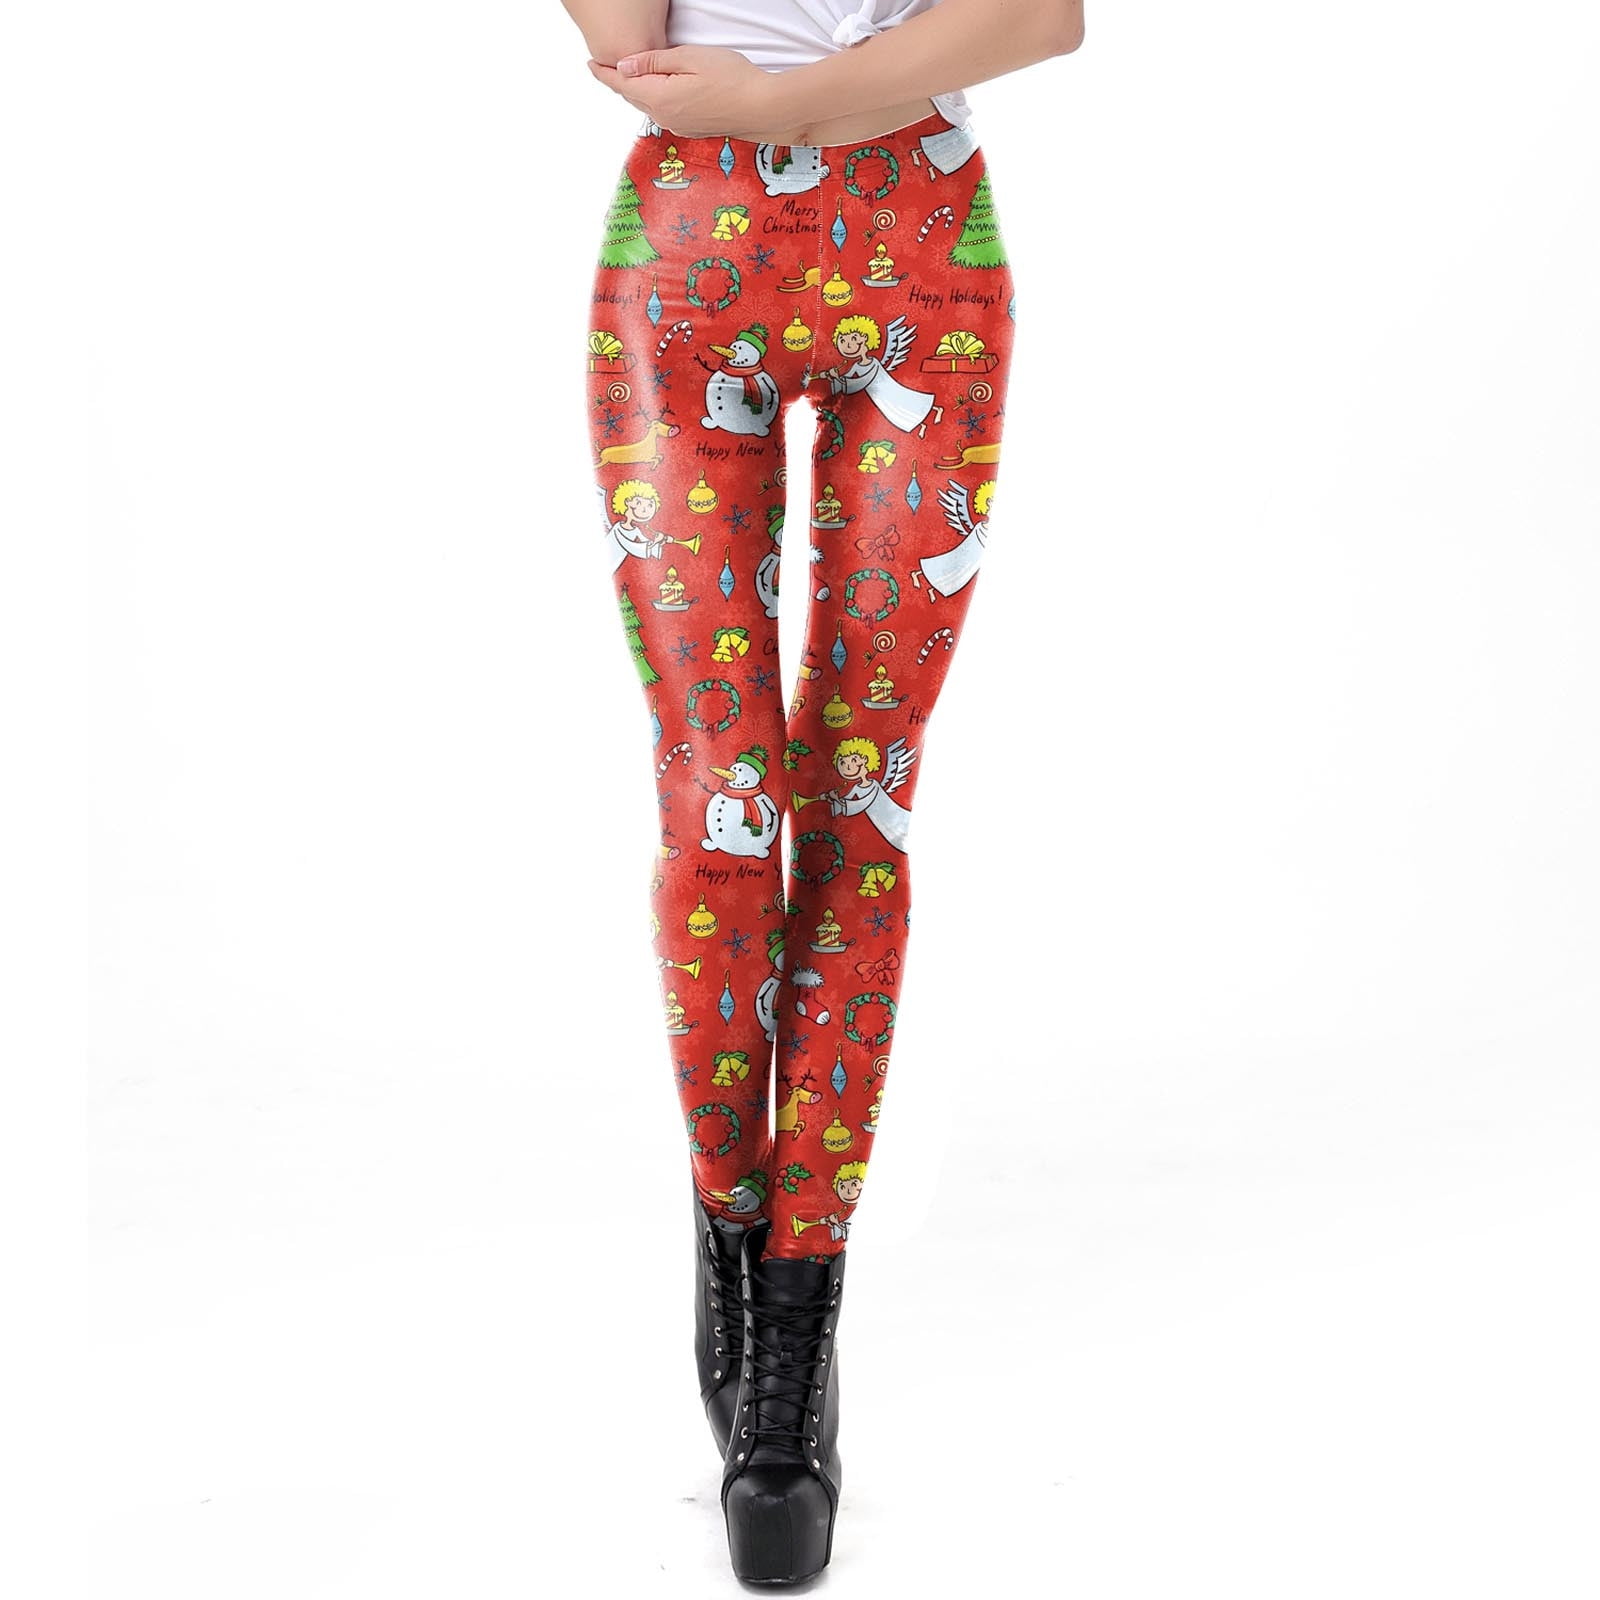 Deagia Fishnet Stockings Seemless High Tight for Women Girls Christmas ...